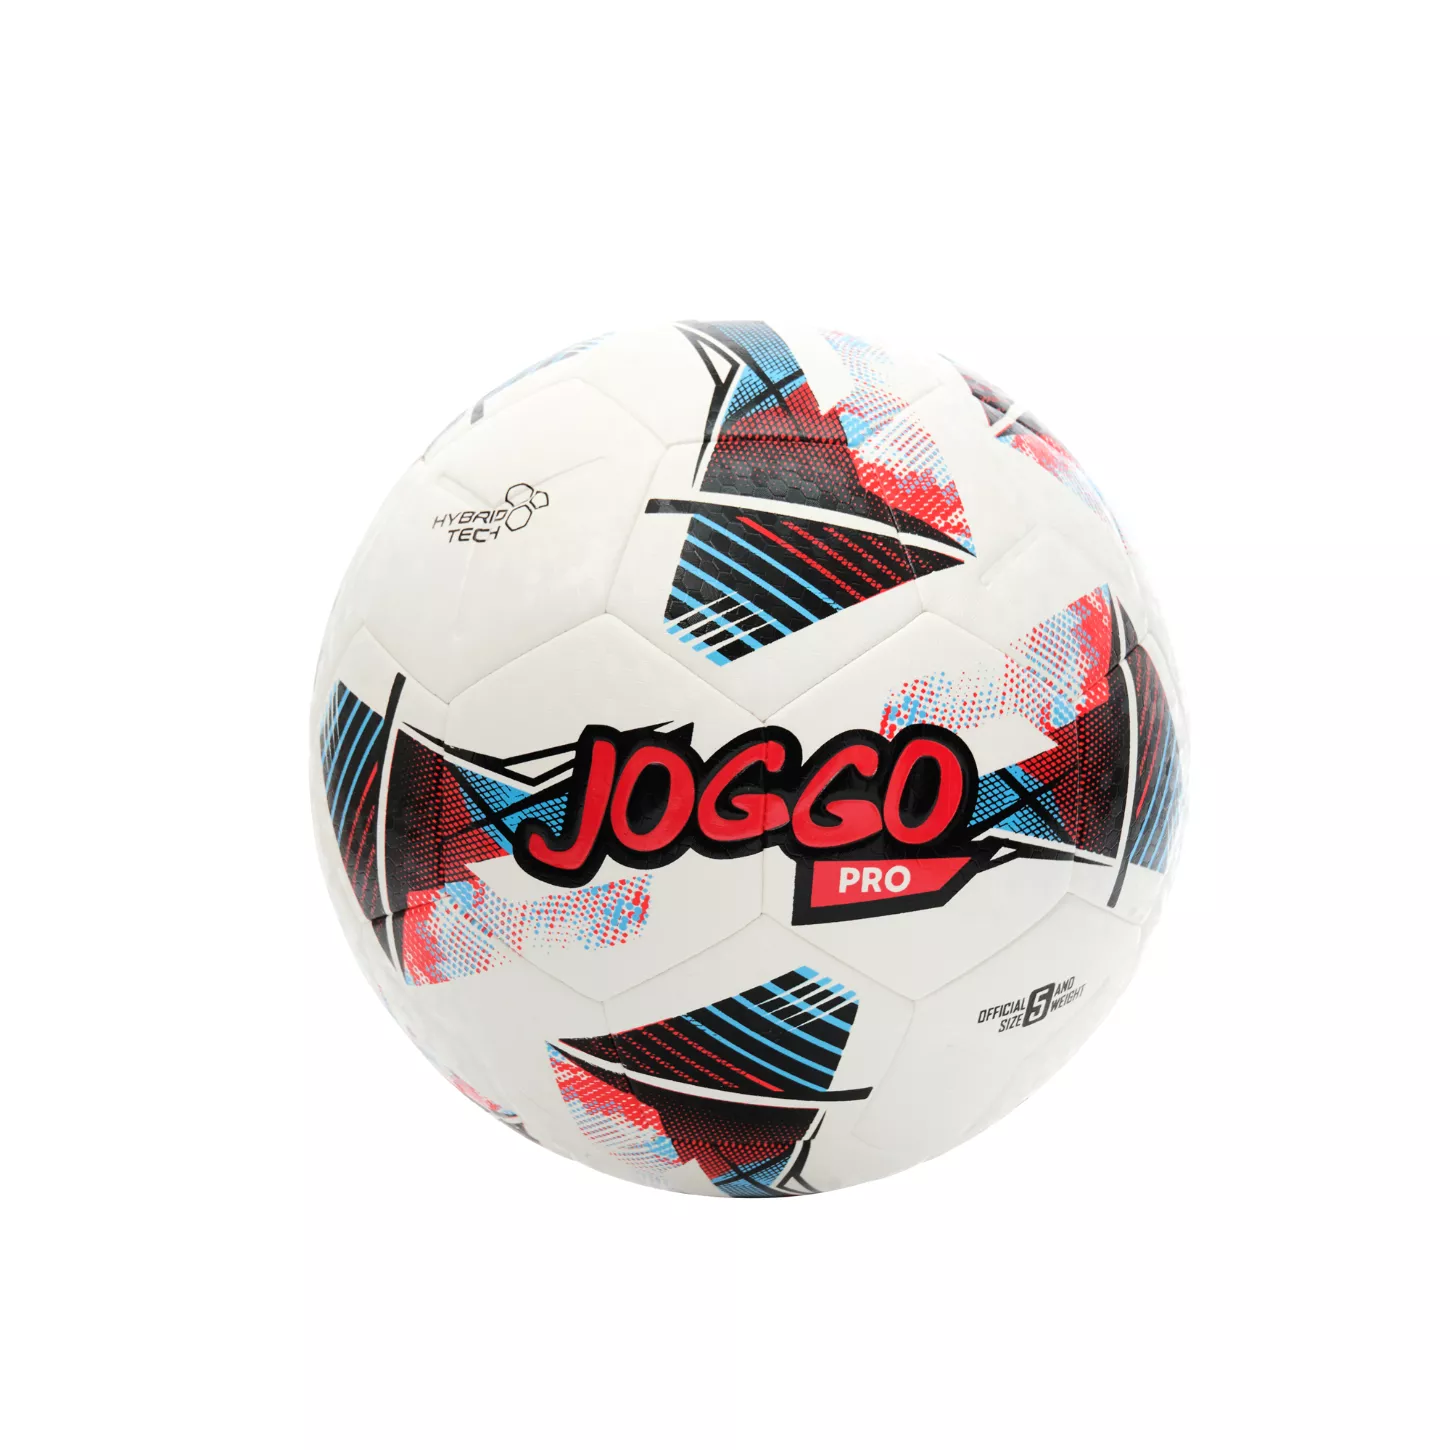 JOGGO PRO Balón oficial de fútbol tamaño 5 IS-22-24